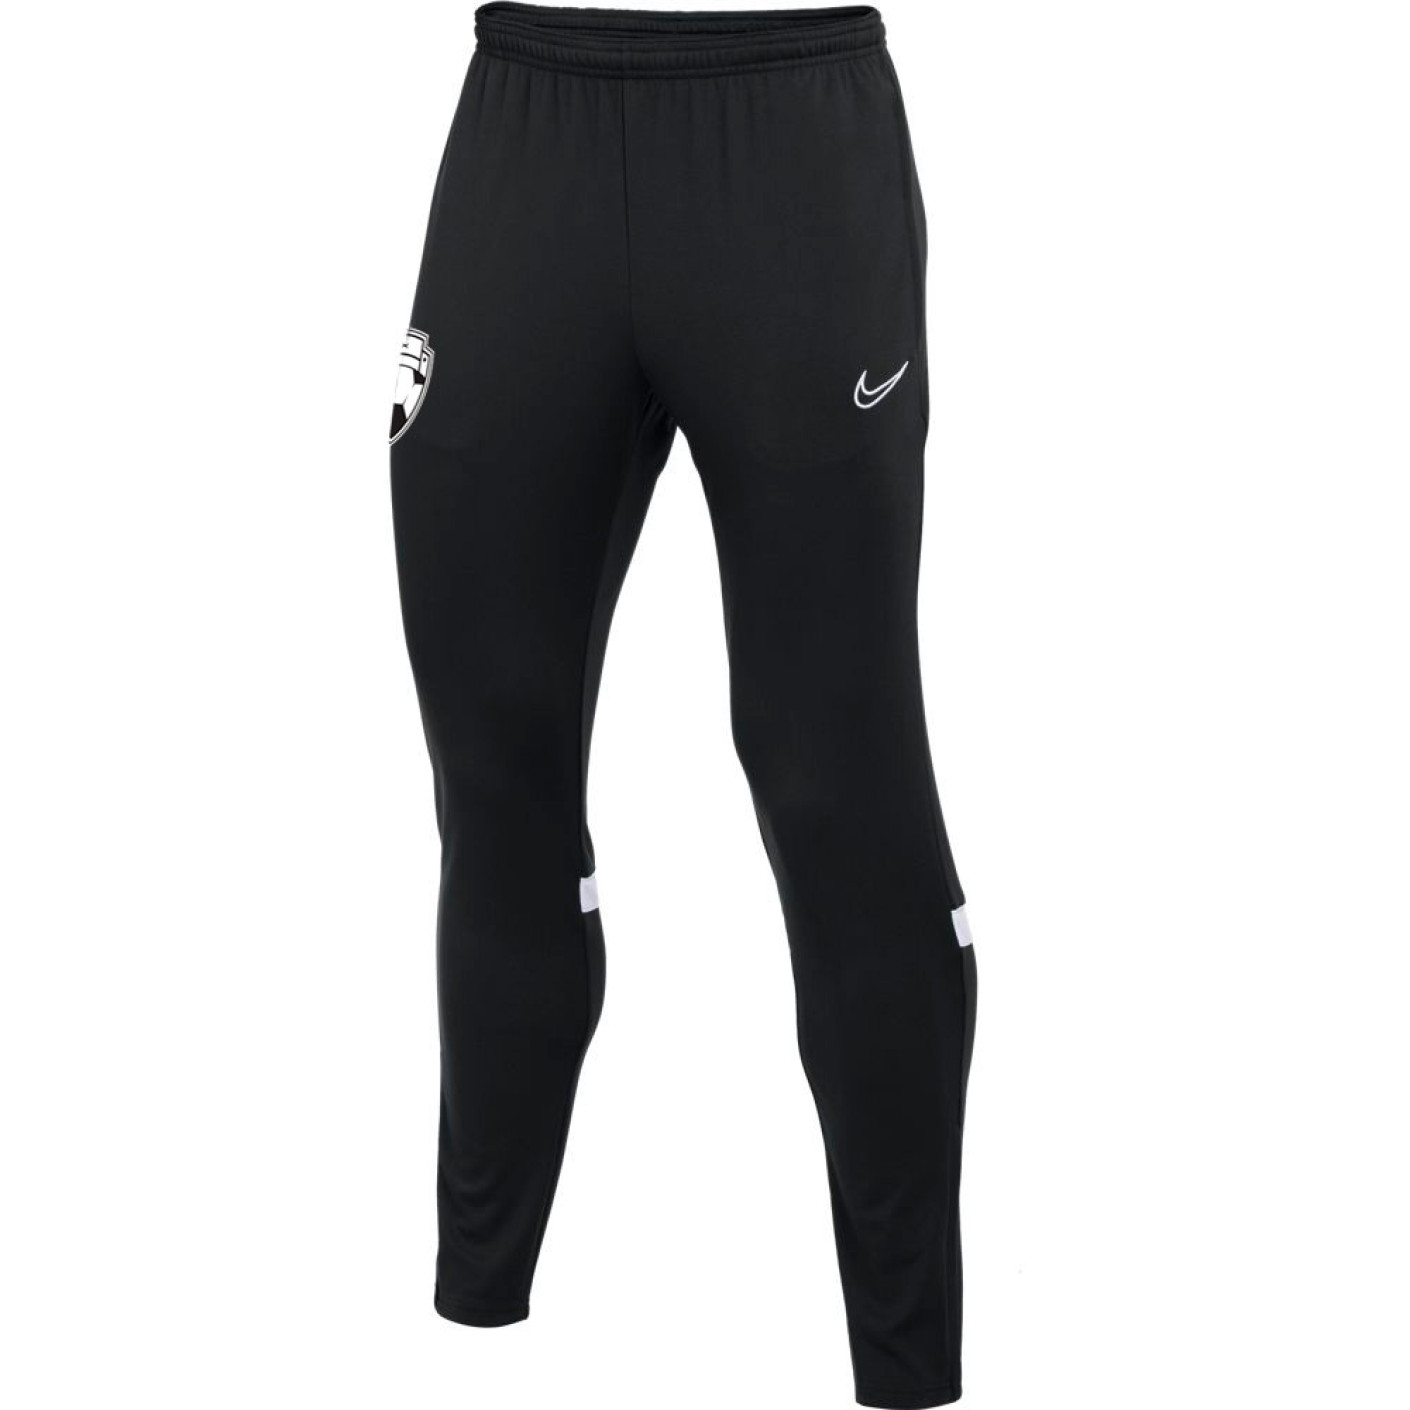 Pantalon d'entraînement Nike Bankzitters noir et blanc